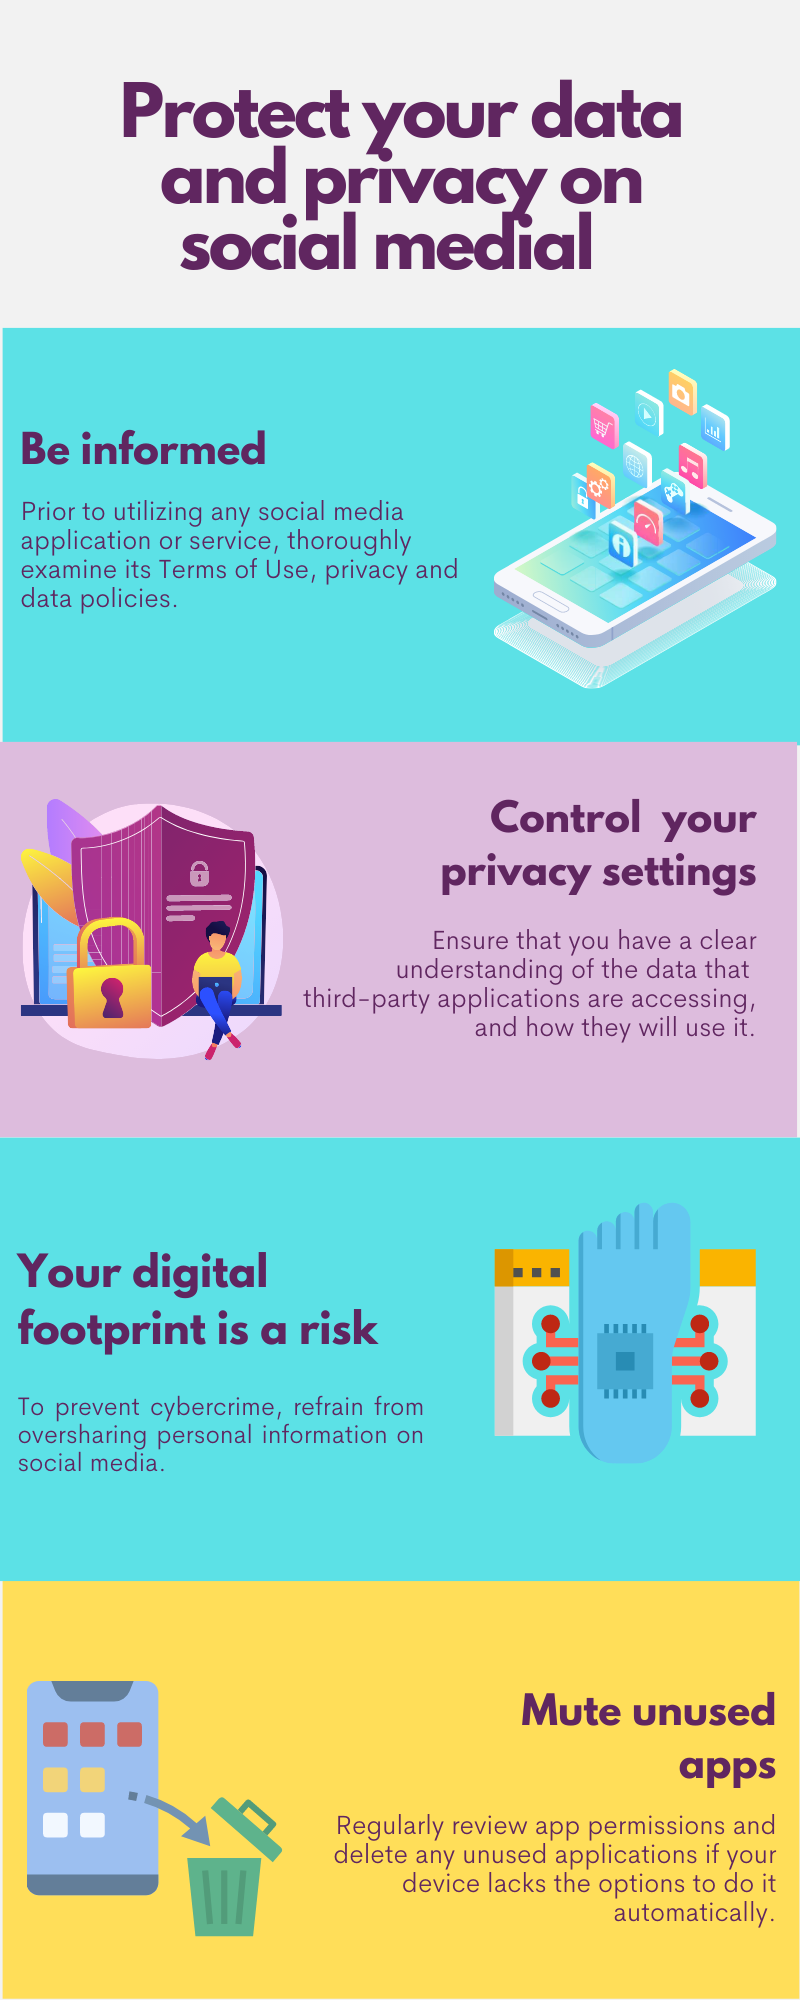 social media privacy tips, series 1 of 2 